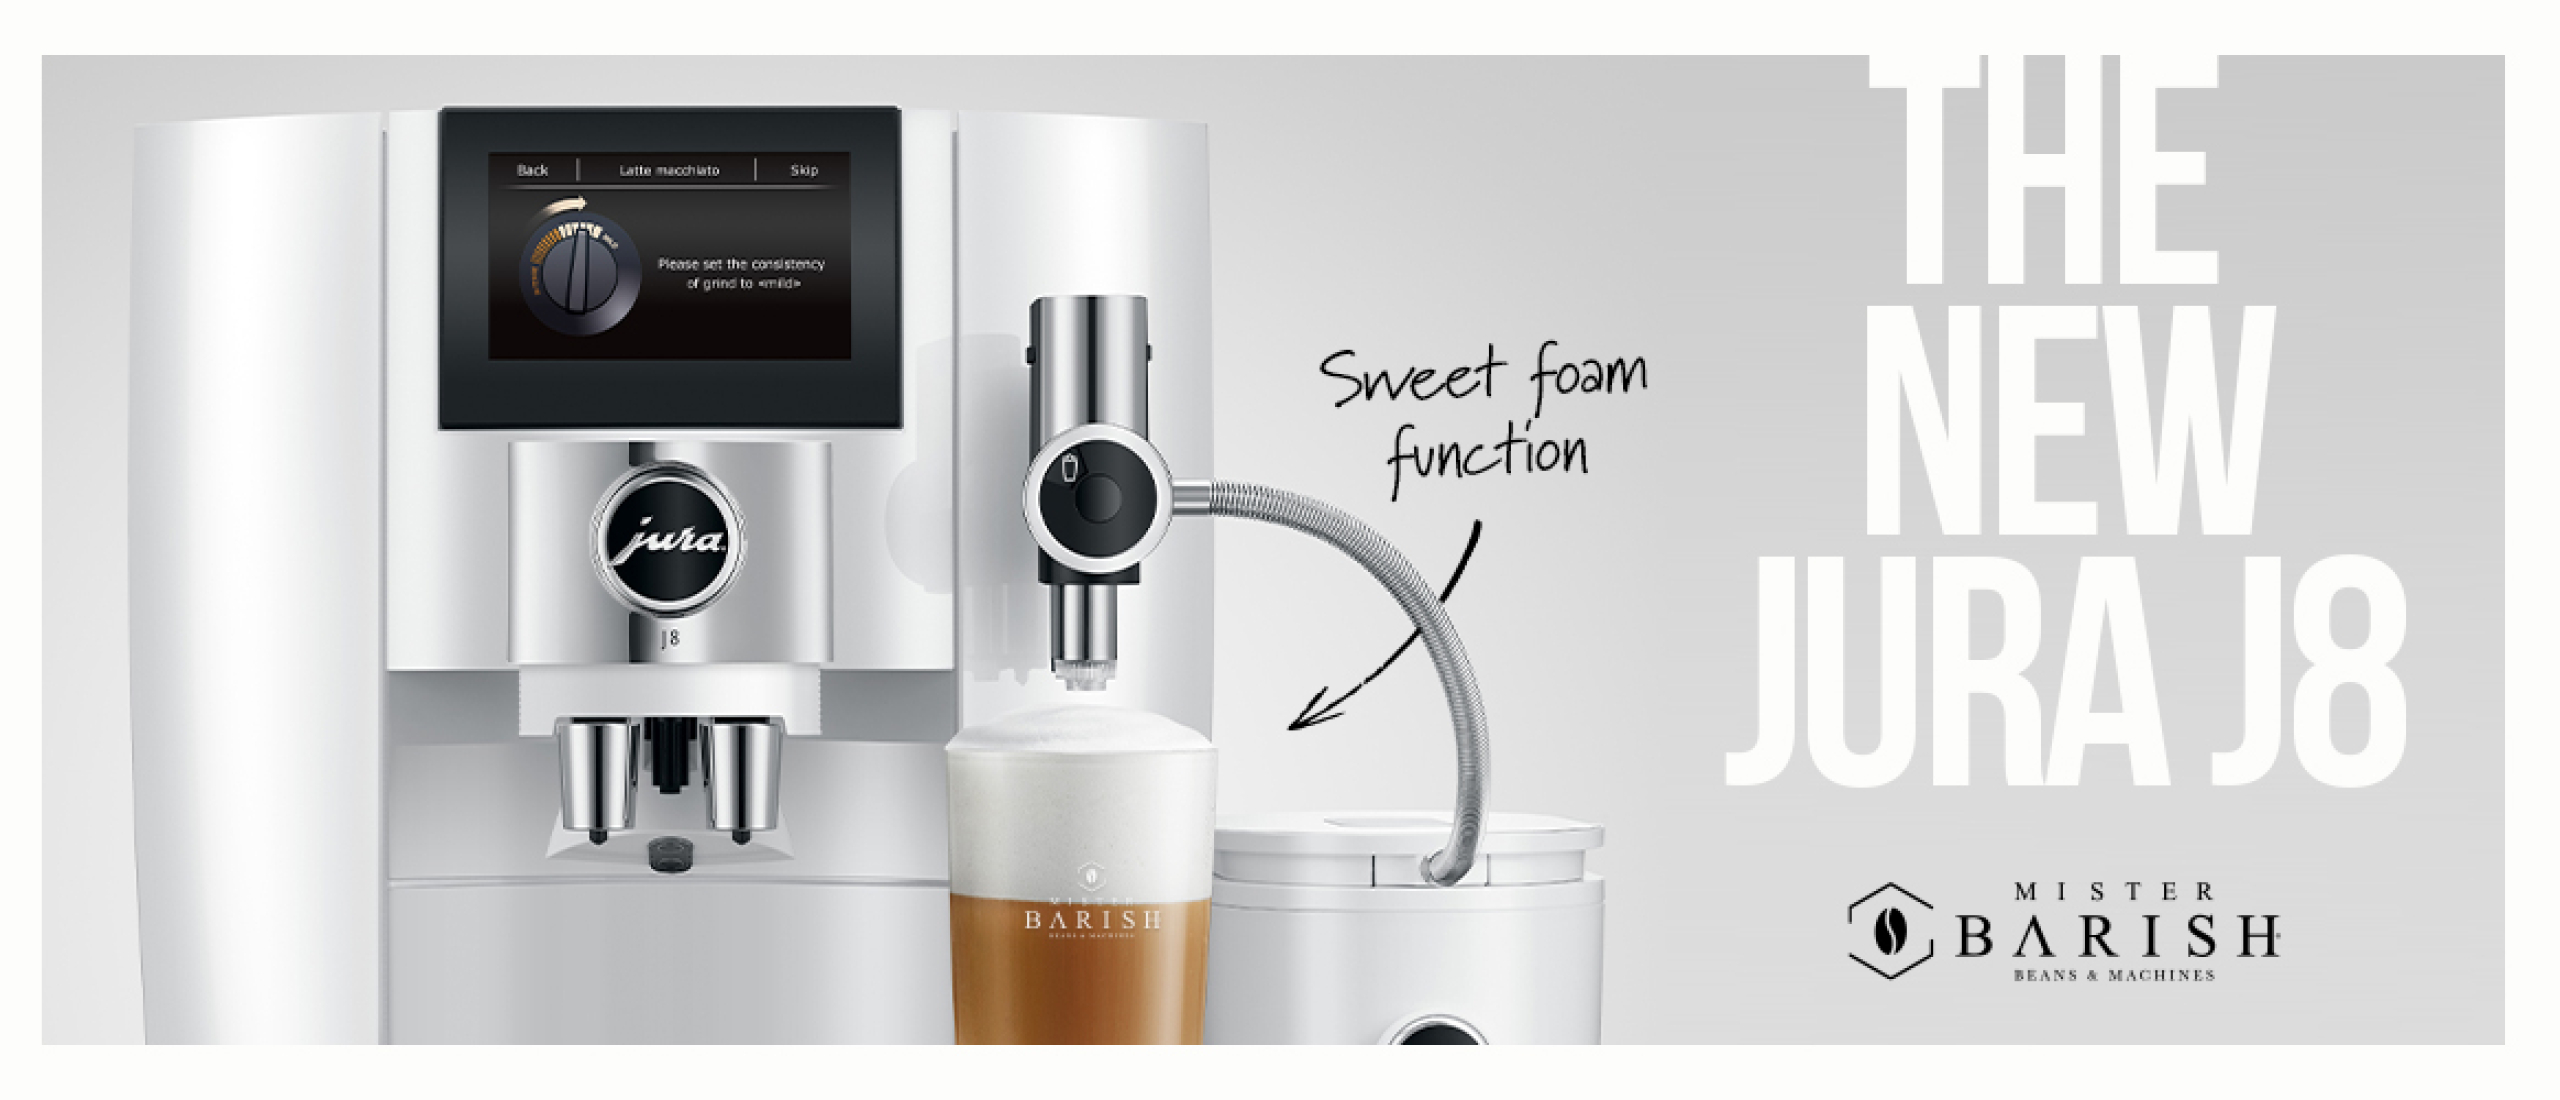 Jura J8: met deze trendy volautomaat zet Jura alles op alles voor de lekkerste koffie